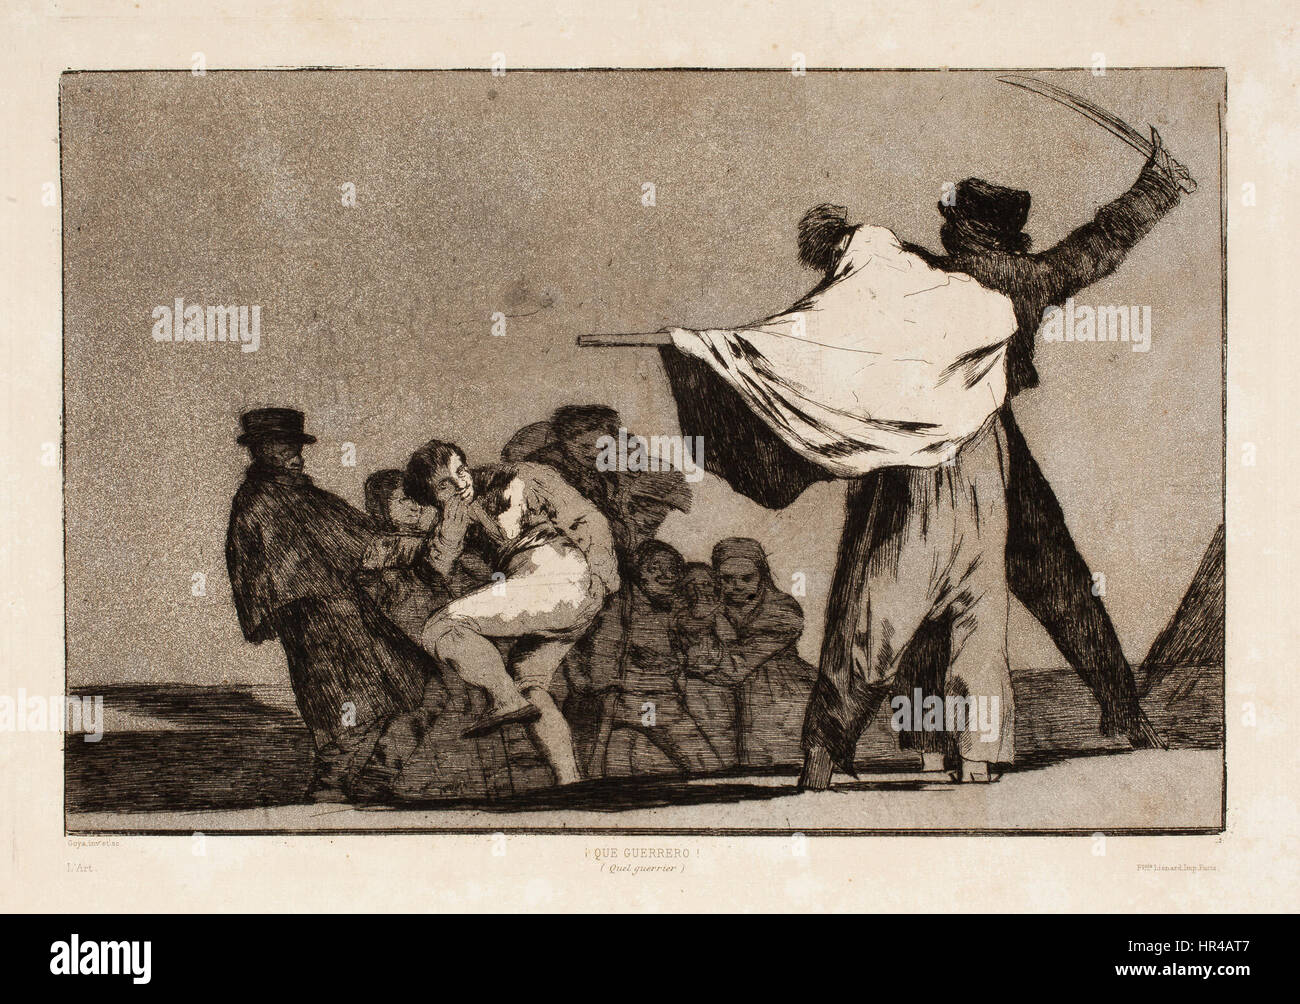 Prado - Los Disparates (1877) - conocido disparati Foto Stock